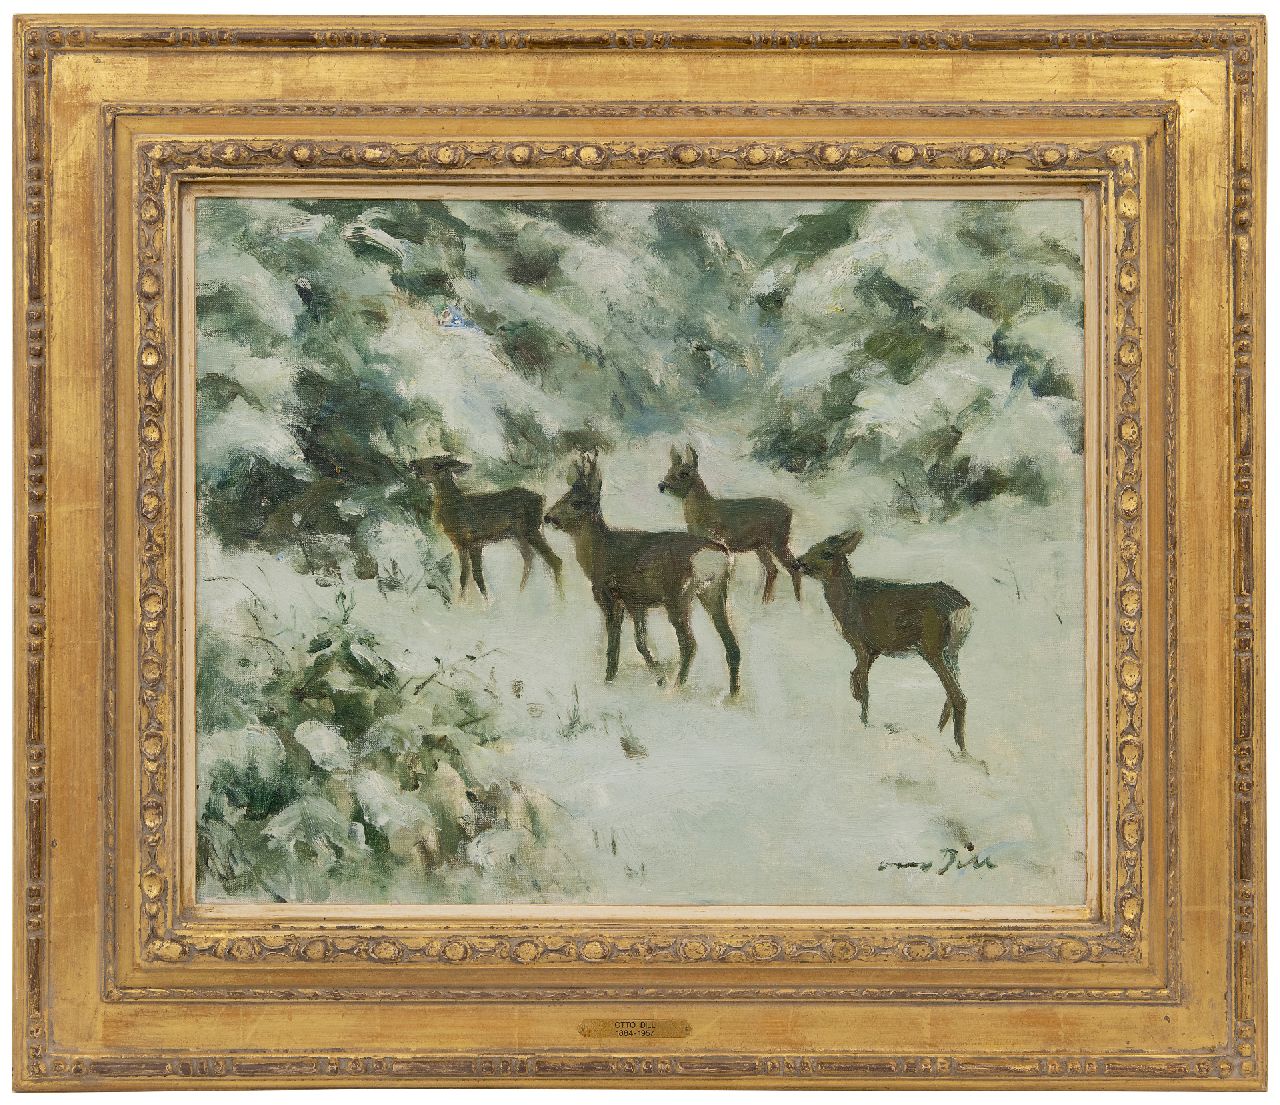 Dill O.C.W.  | Otto Carl Wilhelm Dill | Schilderijen te koop aangeboden | Reeën in de sneeuw, olieverf op doek 40,2 x 50,0 cm, gesigneerd rechtsonder